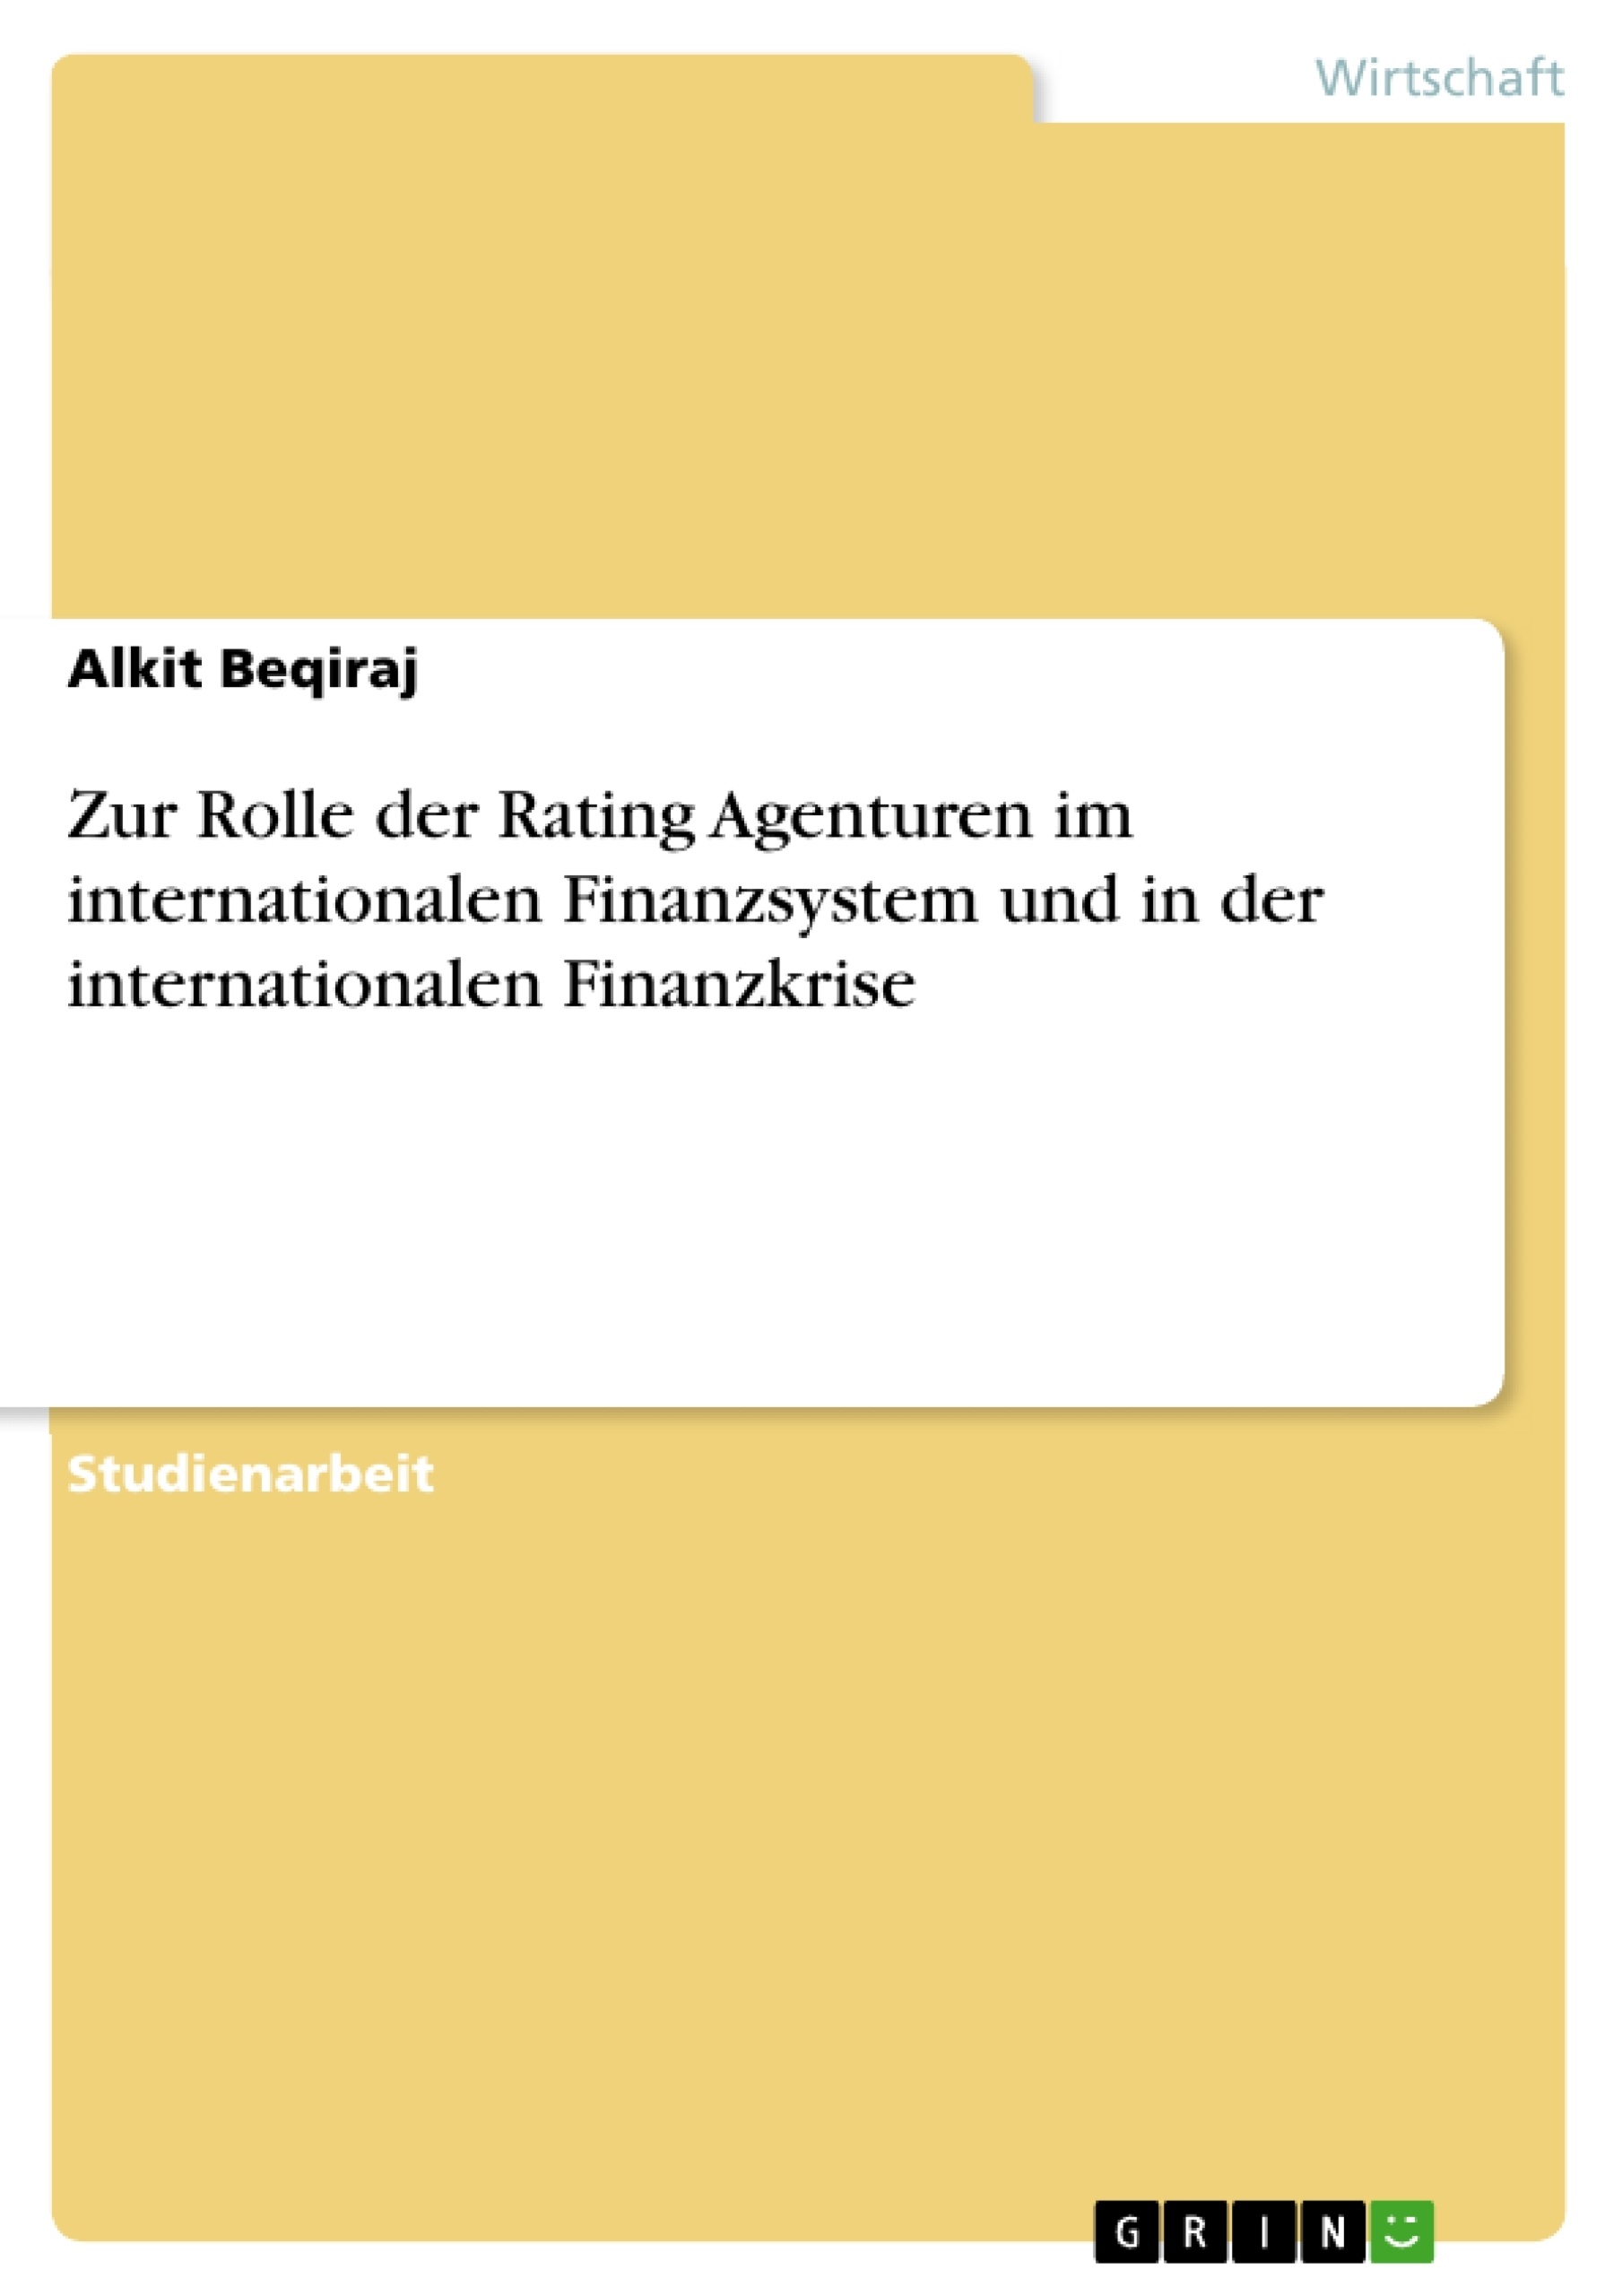 Titel: Zur Rolle der Rating Agenturen  im internationalen Finanzsystem und in der internationalen Finanzkrise 